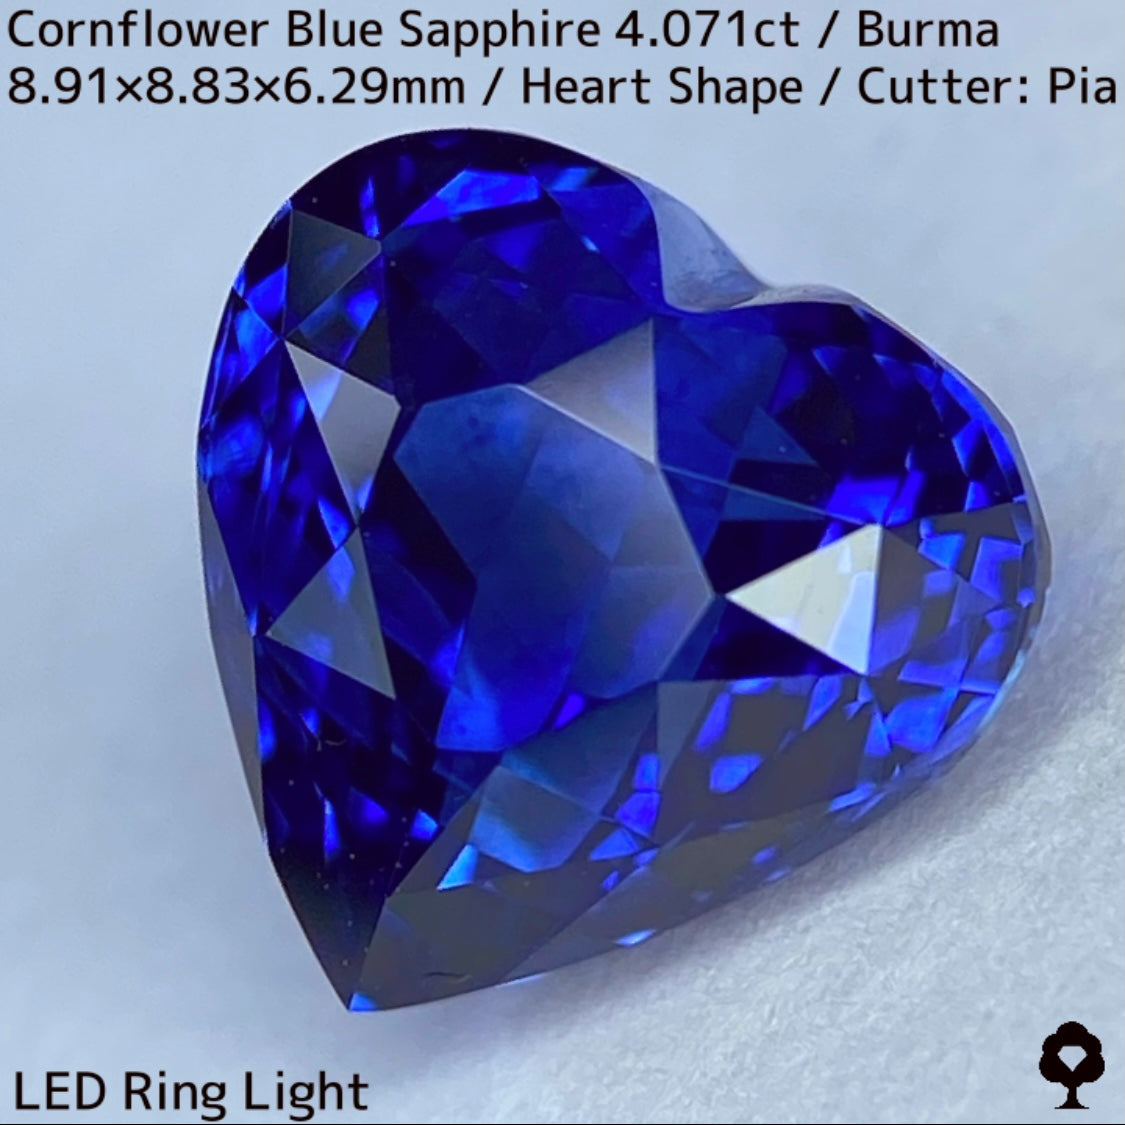 ビルマ産コーンフラワーブルーサファイア4.071ct★ロイヤルブルー寄りの濃いめ最高コーンフラワーブルーが美しすぎる超一級品